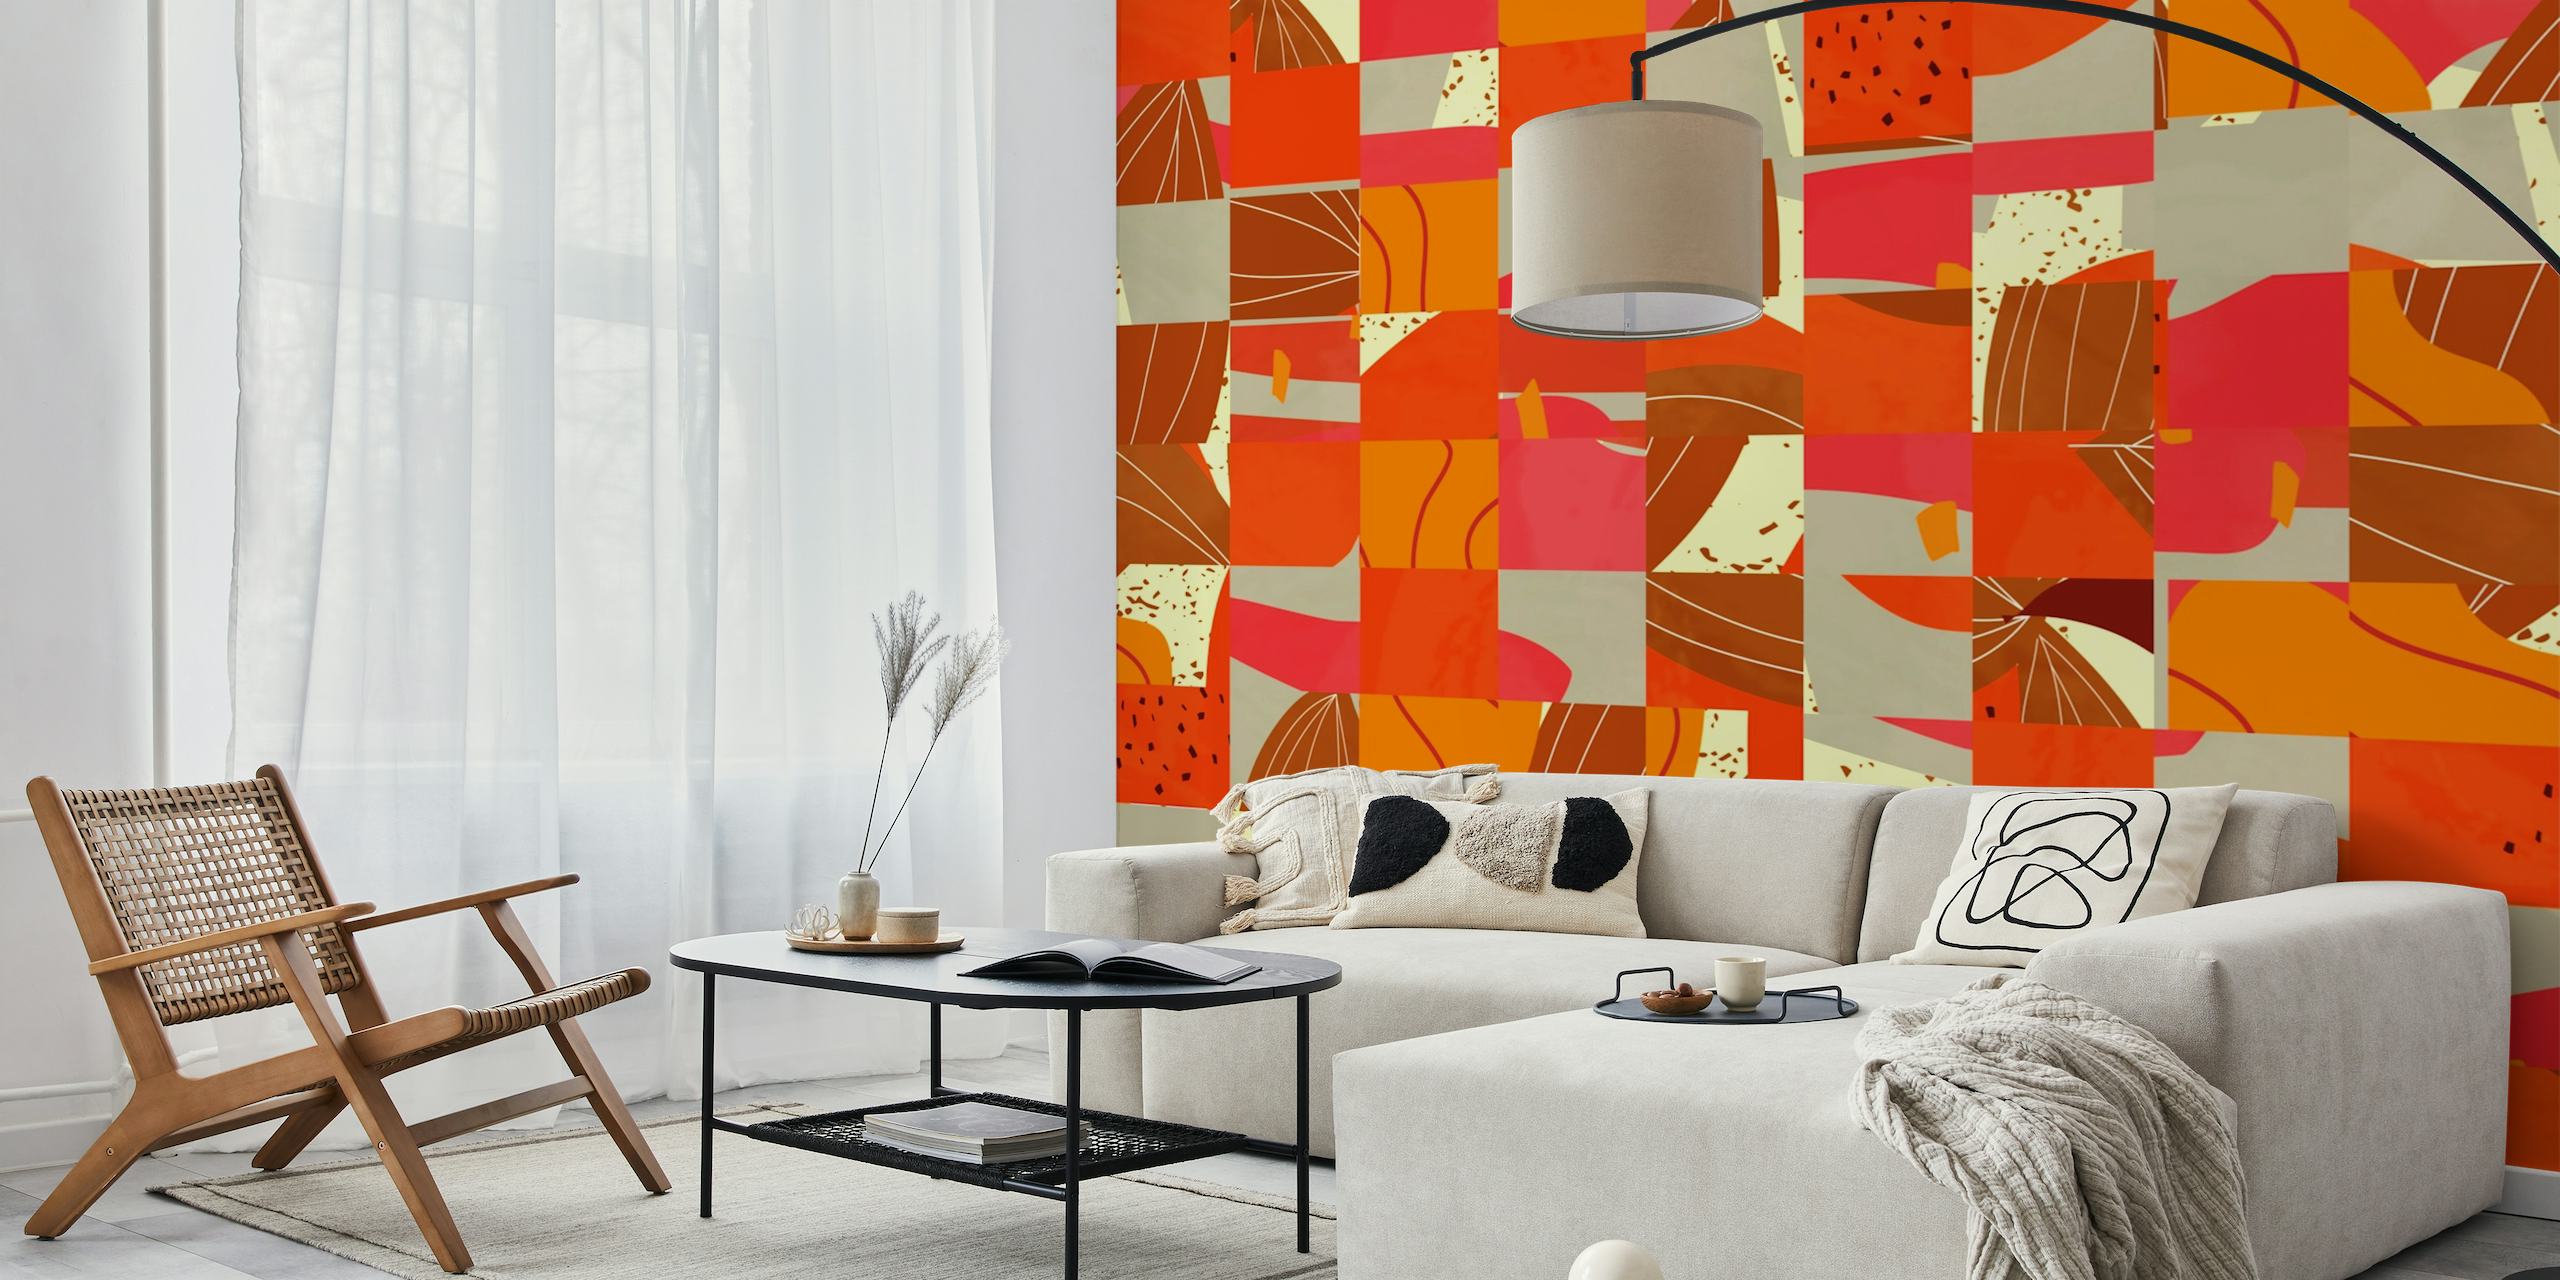 Kubik-muurschildering met abstracte geometrische vormen in warme en koele tinten